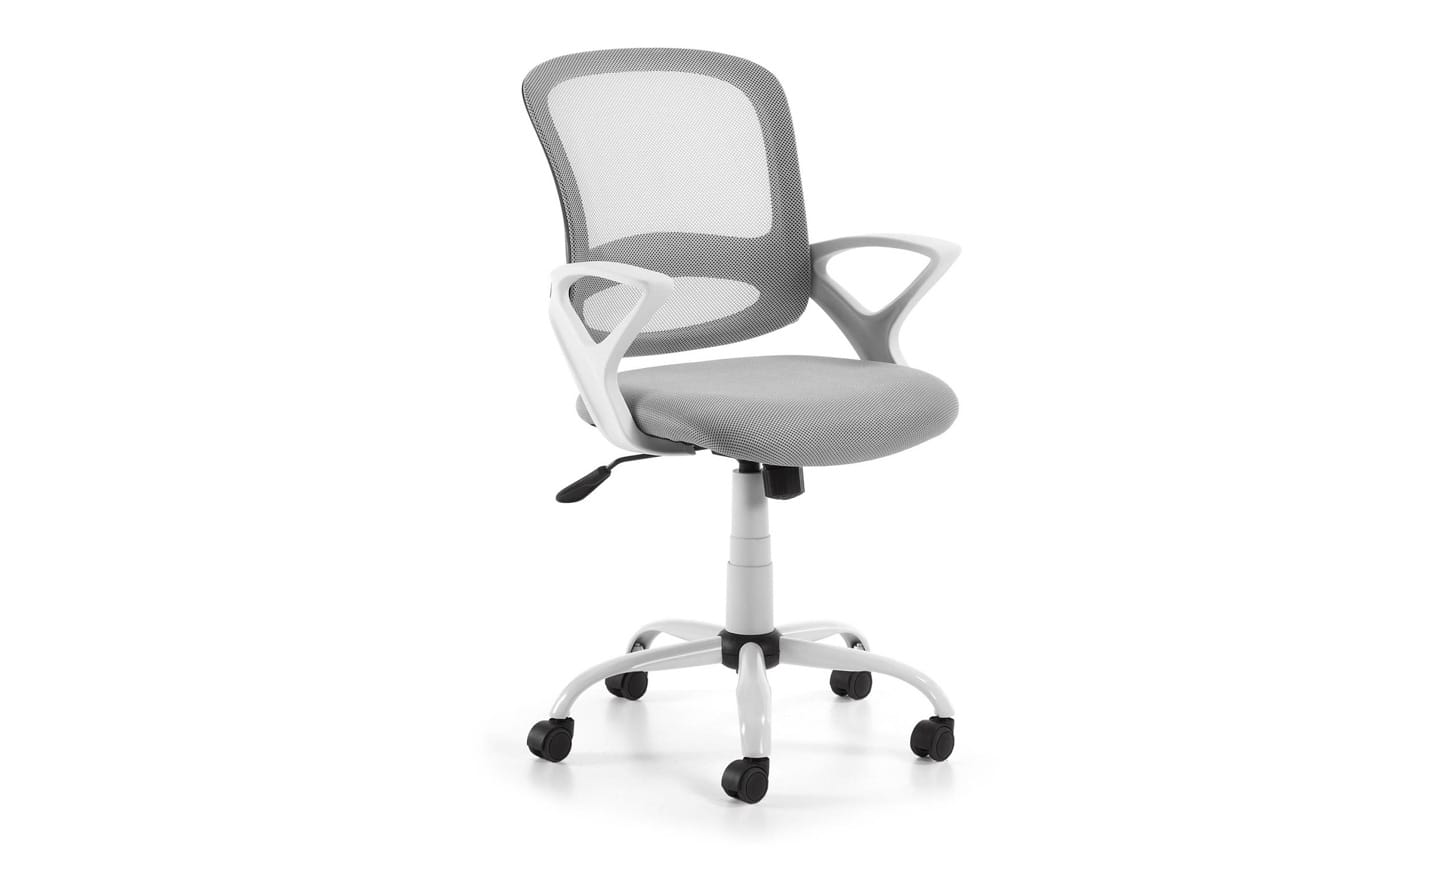 Cadeira de Escritório Tangier Cinza - C563J03. Cadeira giratória com encosto reclinável, suporte lombar e assento ajustável, ideal para ambientes de trabalho confortáveis e produtivos.